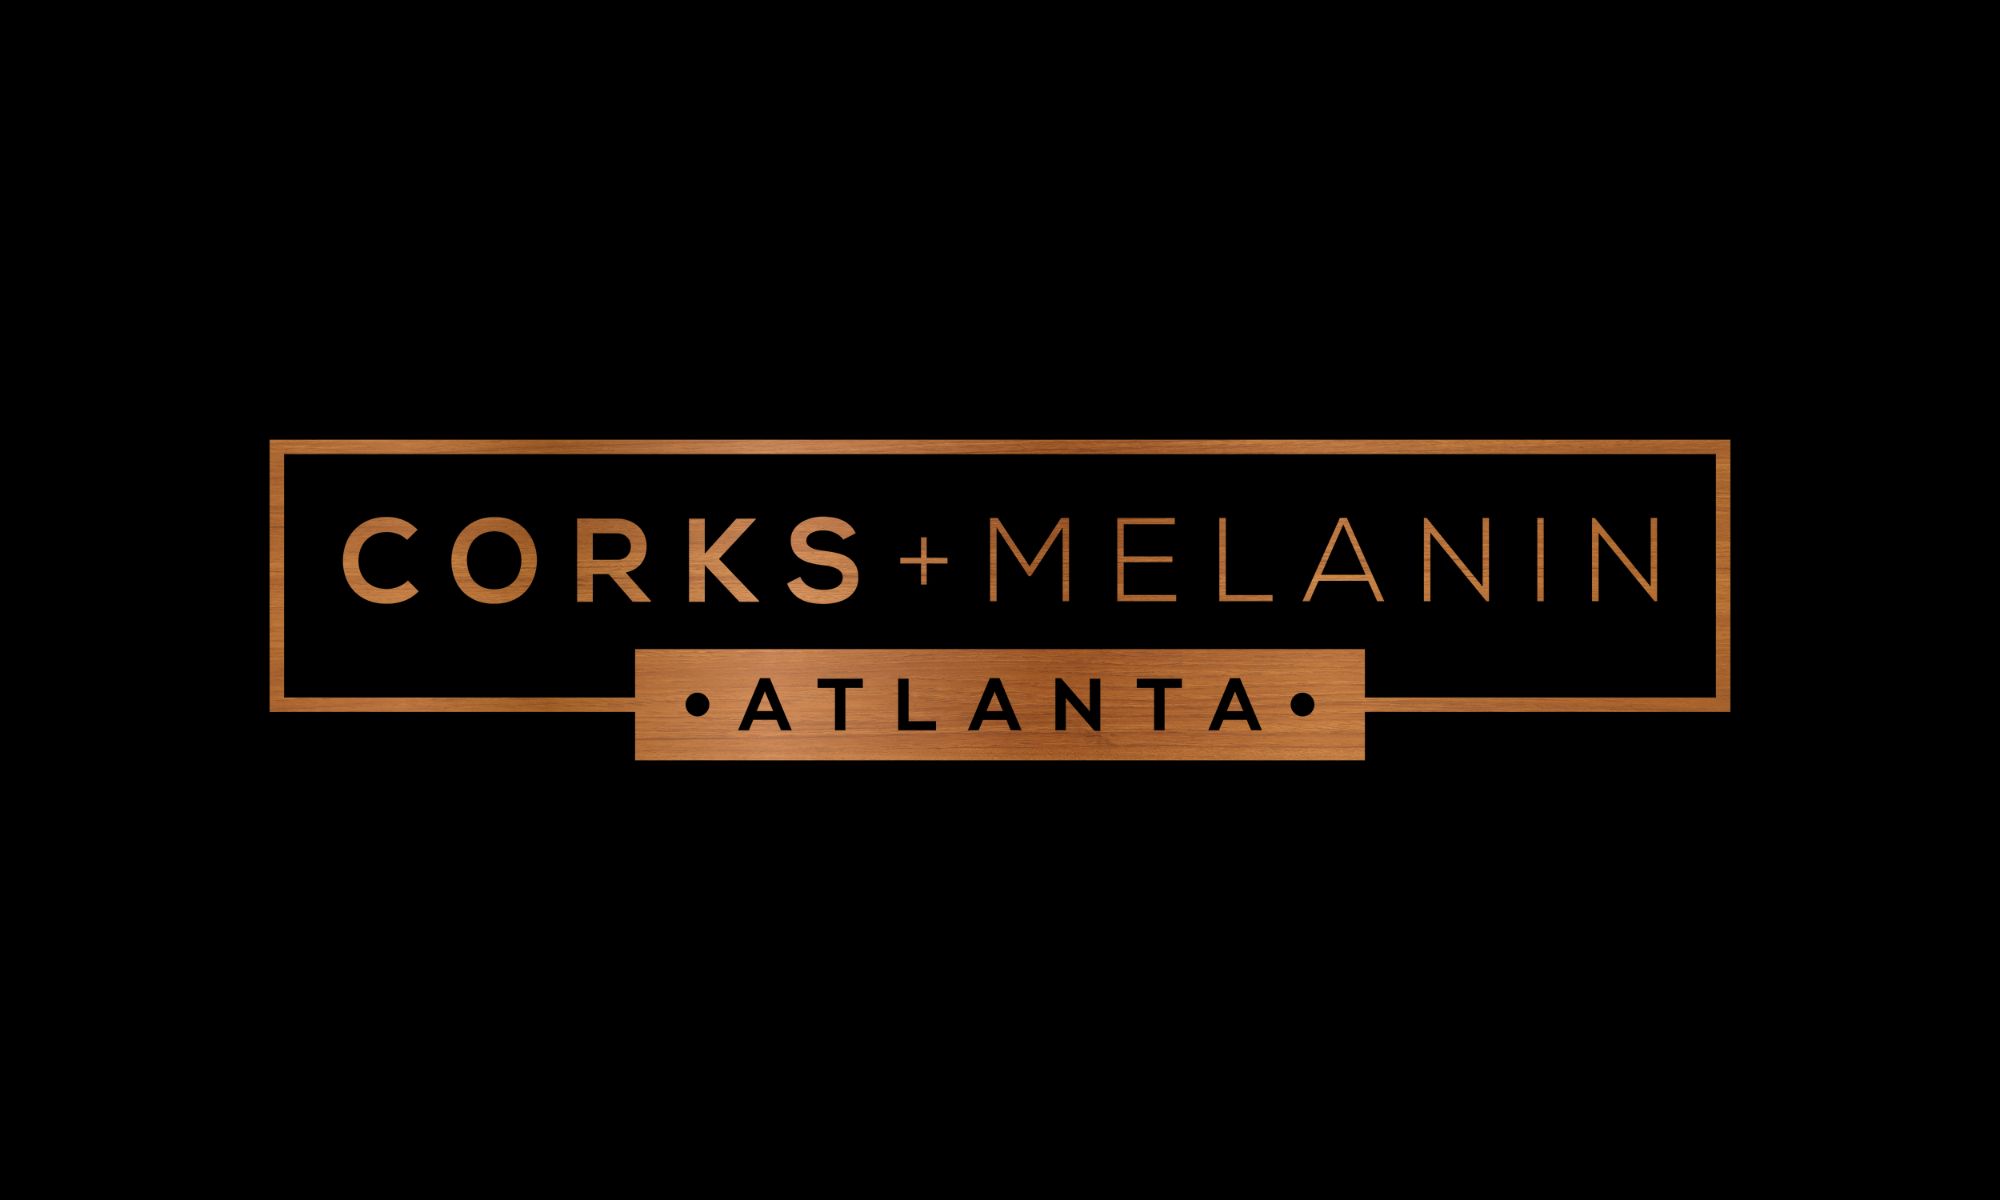 Corks + Melanin Atlanta